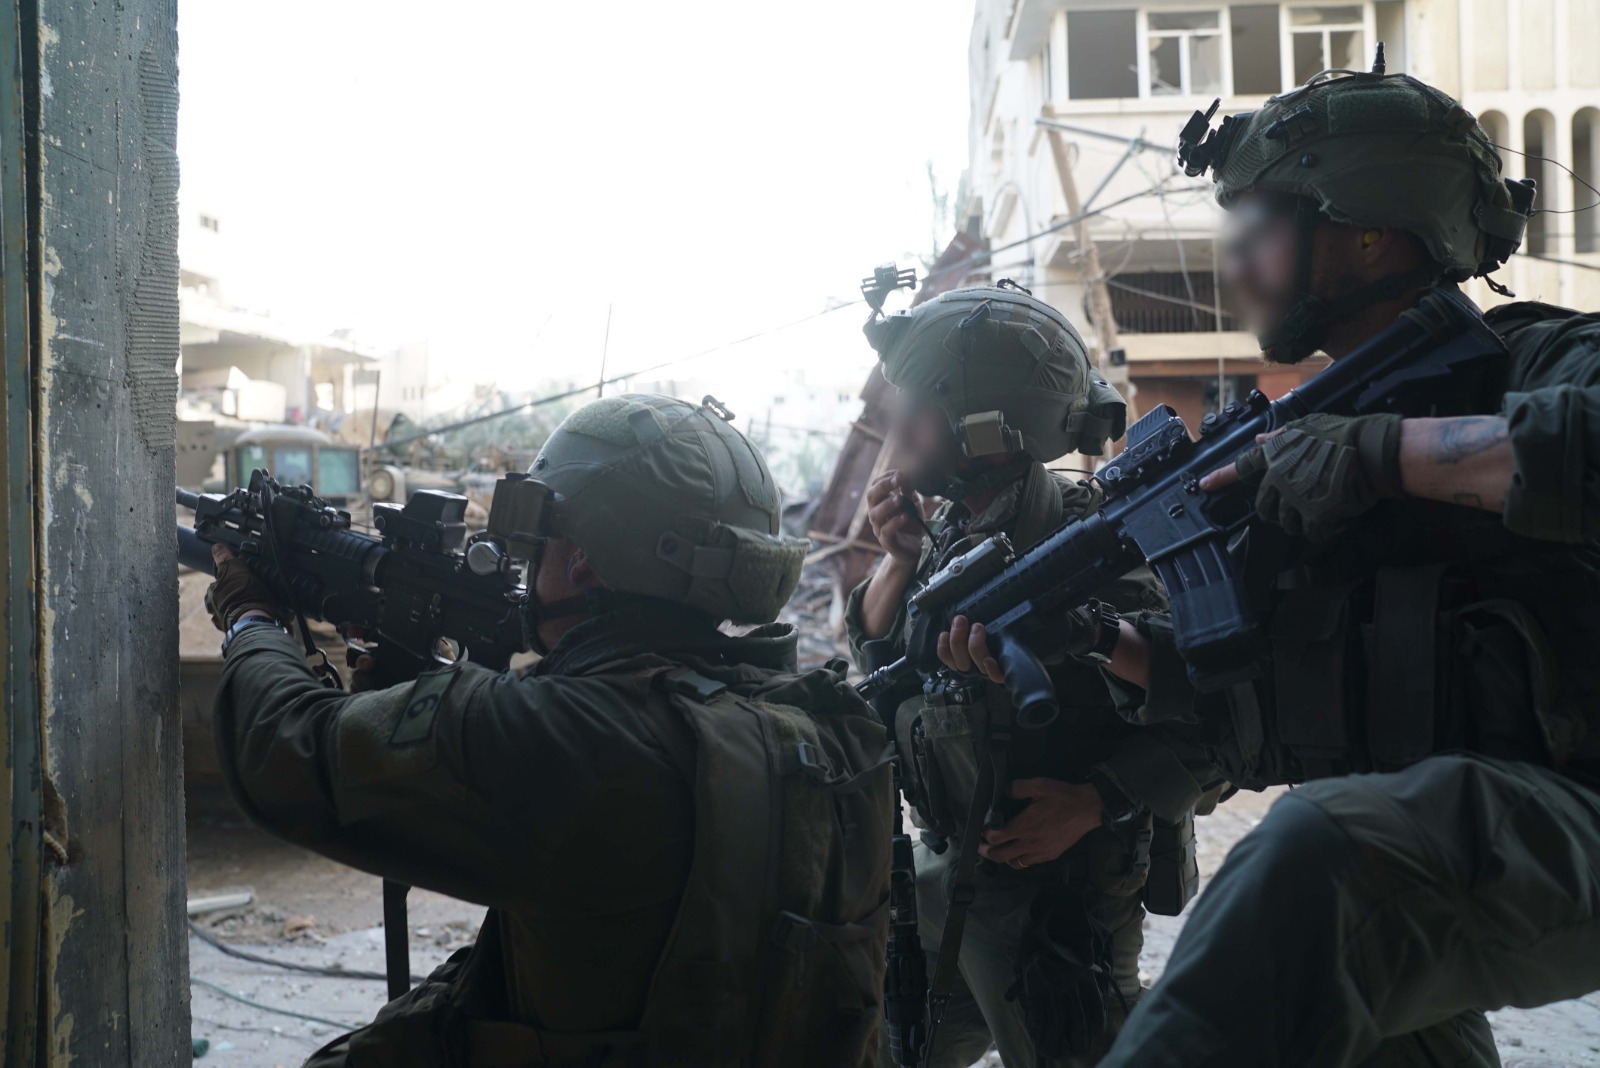 الجيش الإسرائيلي يقتل ثلاثة فلسطينيين تسللوا إلى مستوطنة أدورا قرب الخليل (فيديو)